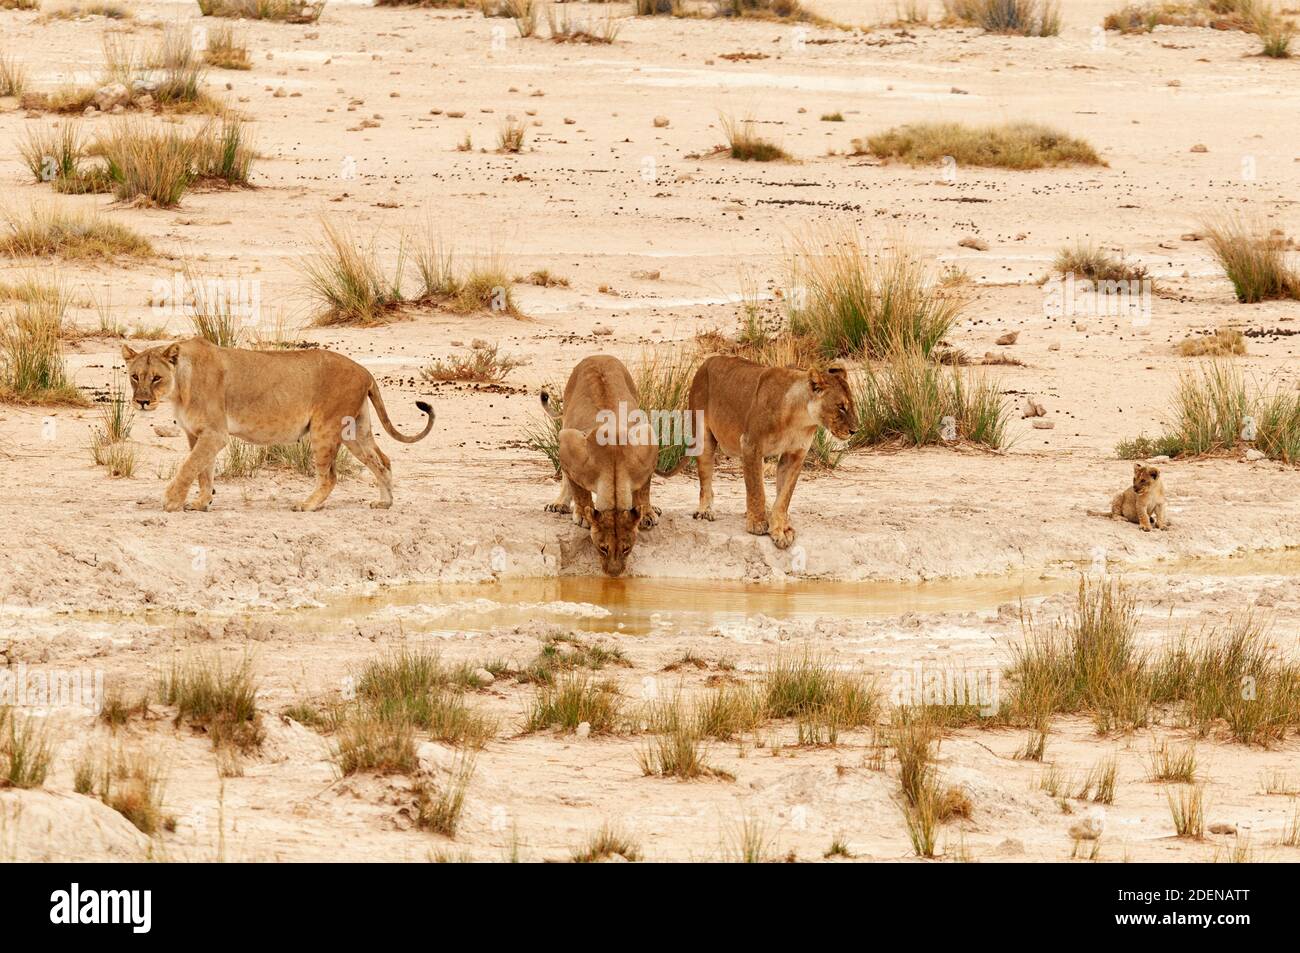 Afrika, Namibia, Kunene Region, Etosha National Park,  pride of lion at waterhole Stock Photo